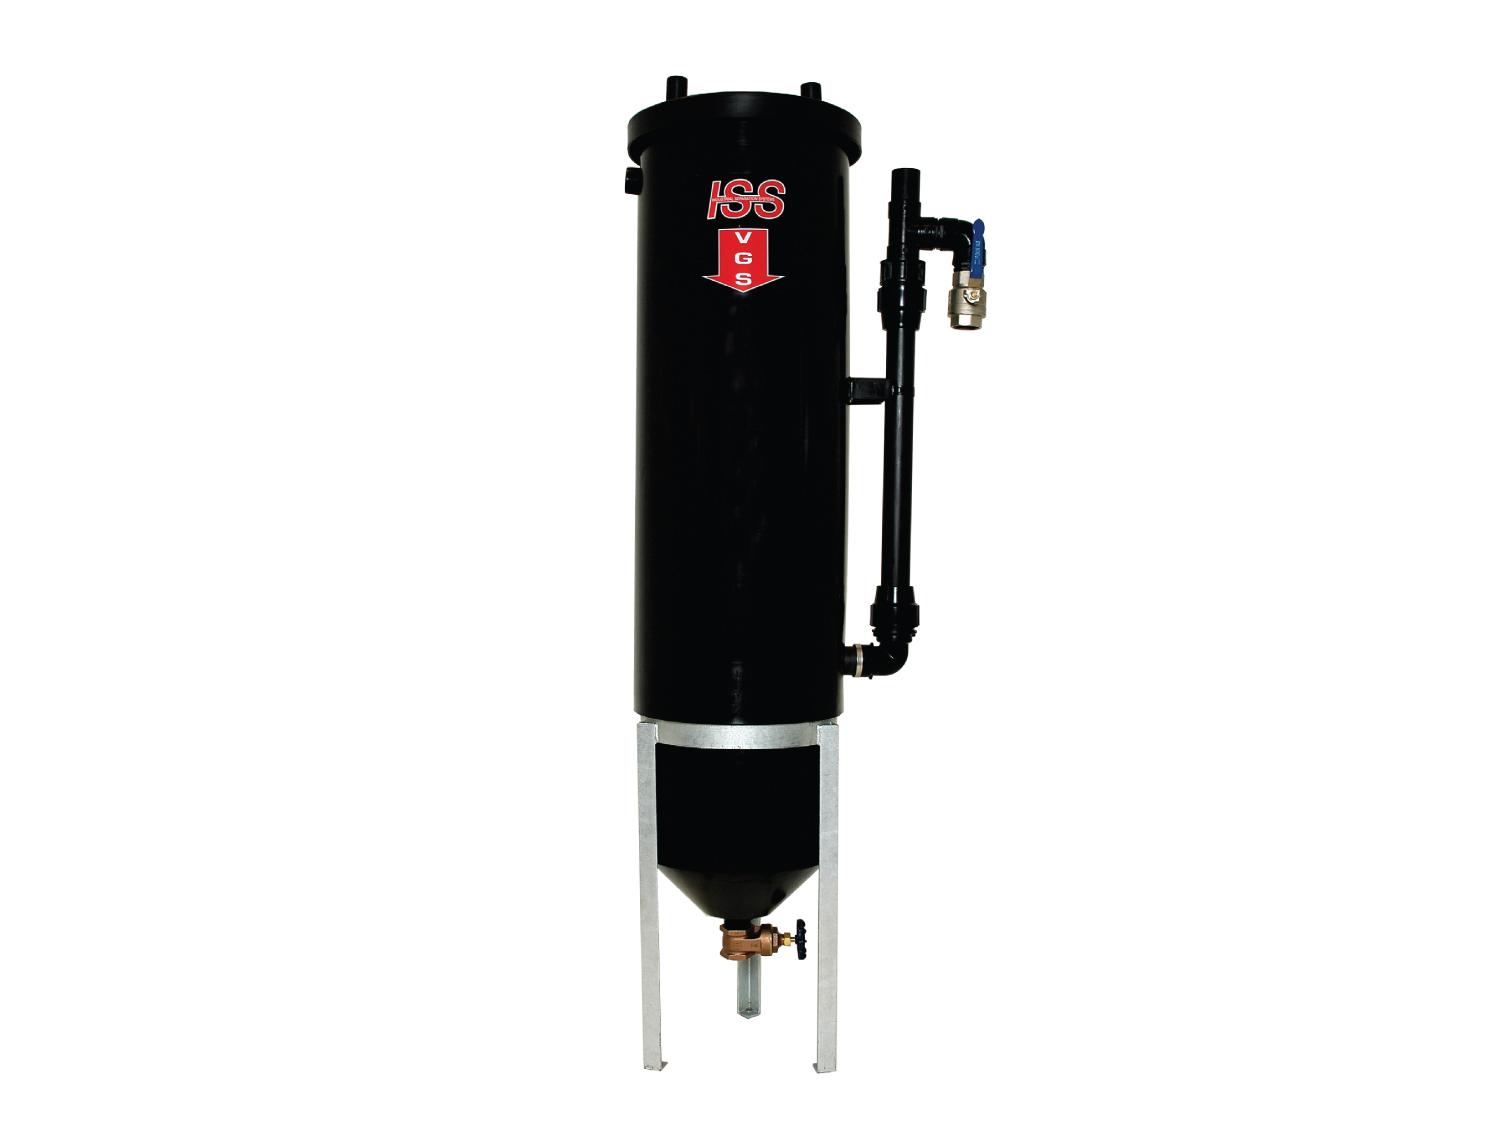 Oil Water Separator - VGS Extended Body Model